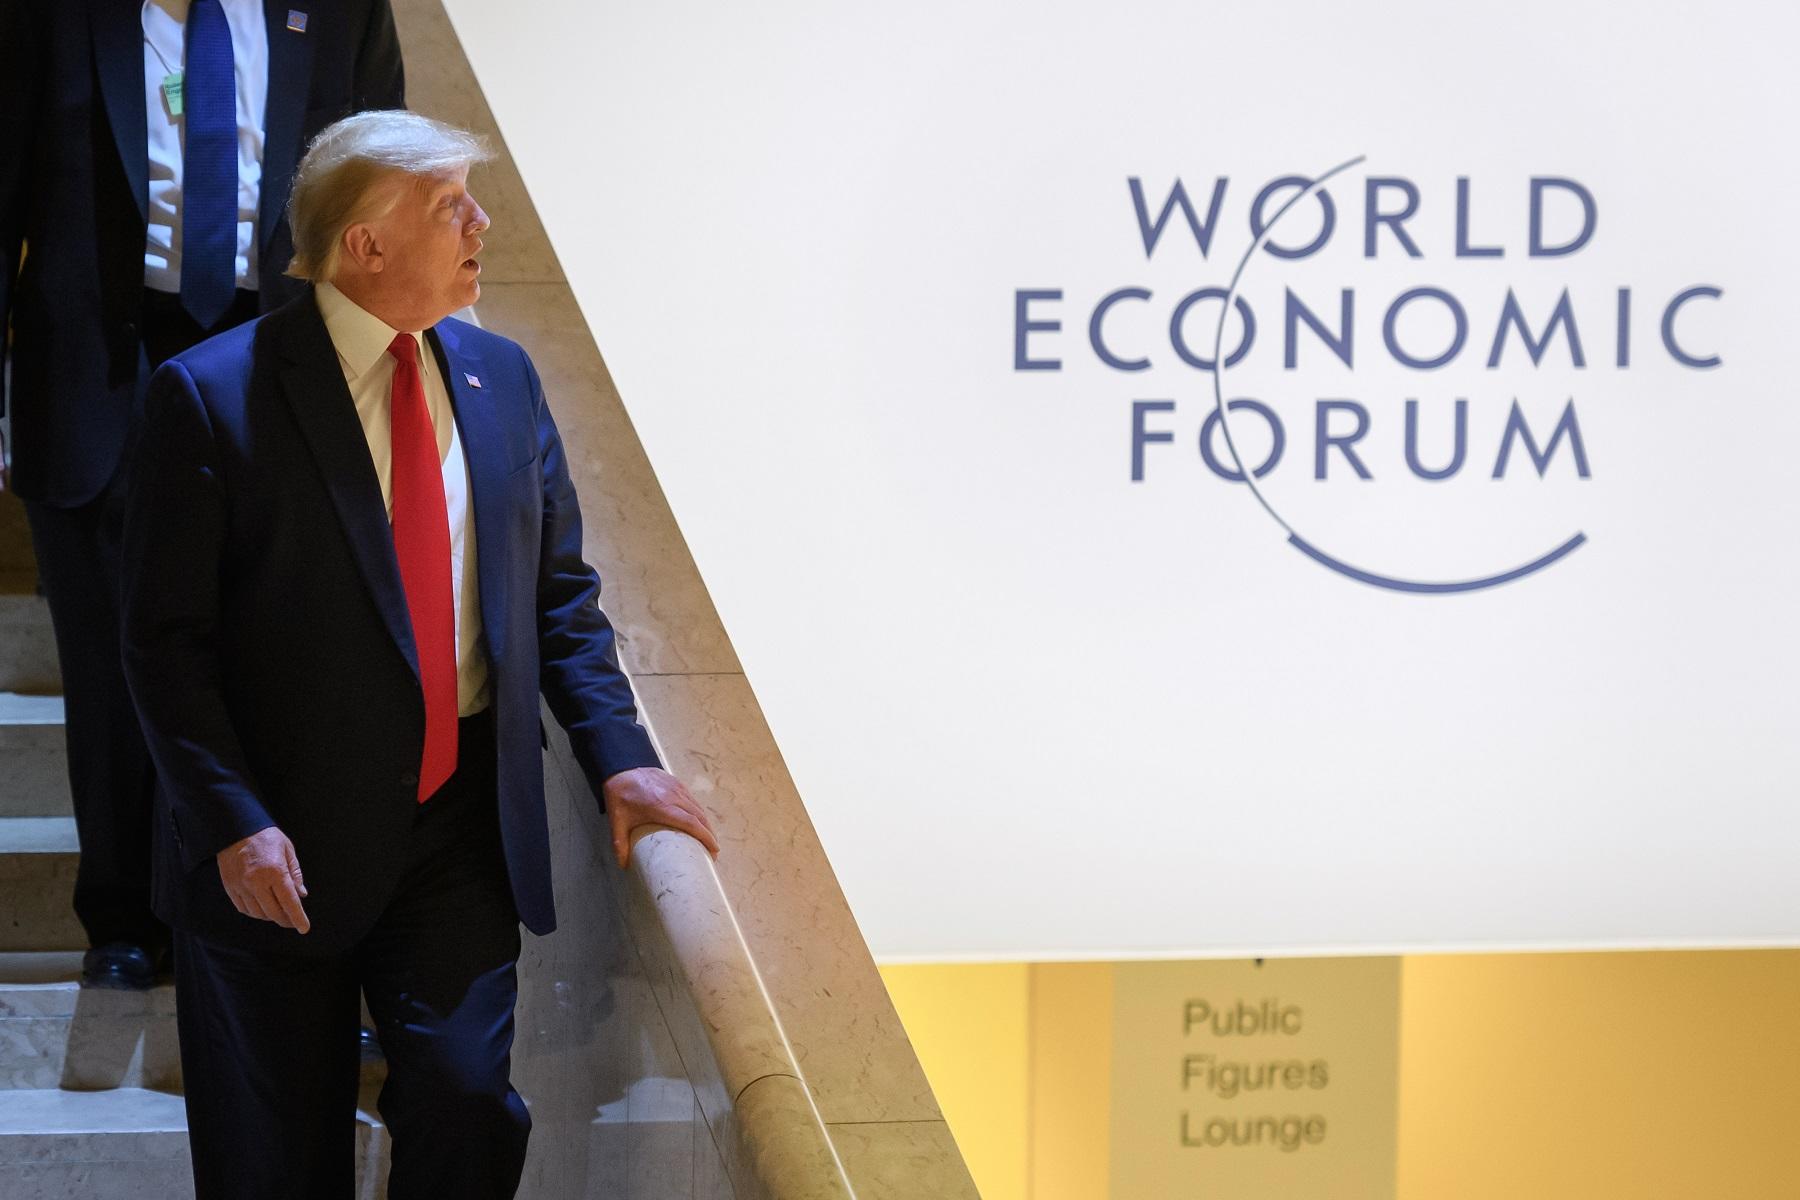 الرئيس الأميركي دونالد ترامب في المنتدى الاقتصادي العالمي في دافوس. 21 يناير 2020. (أ ف ب)